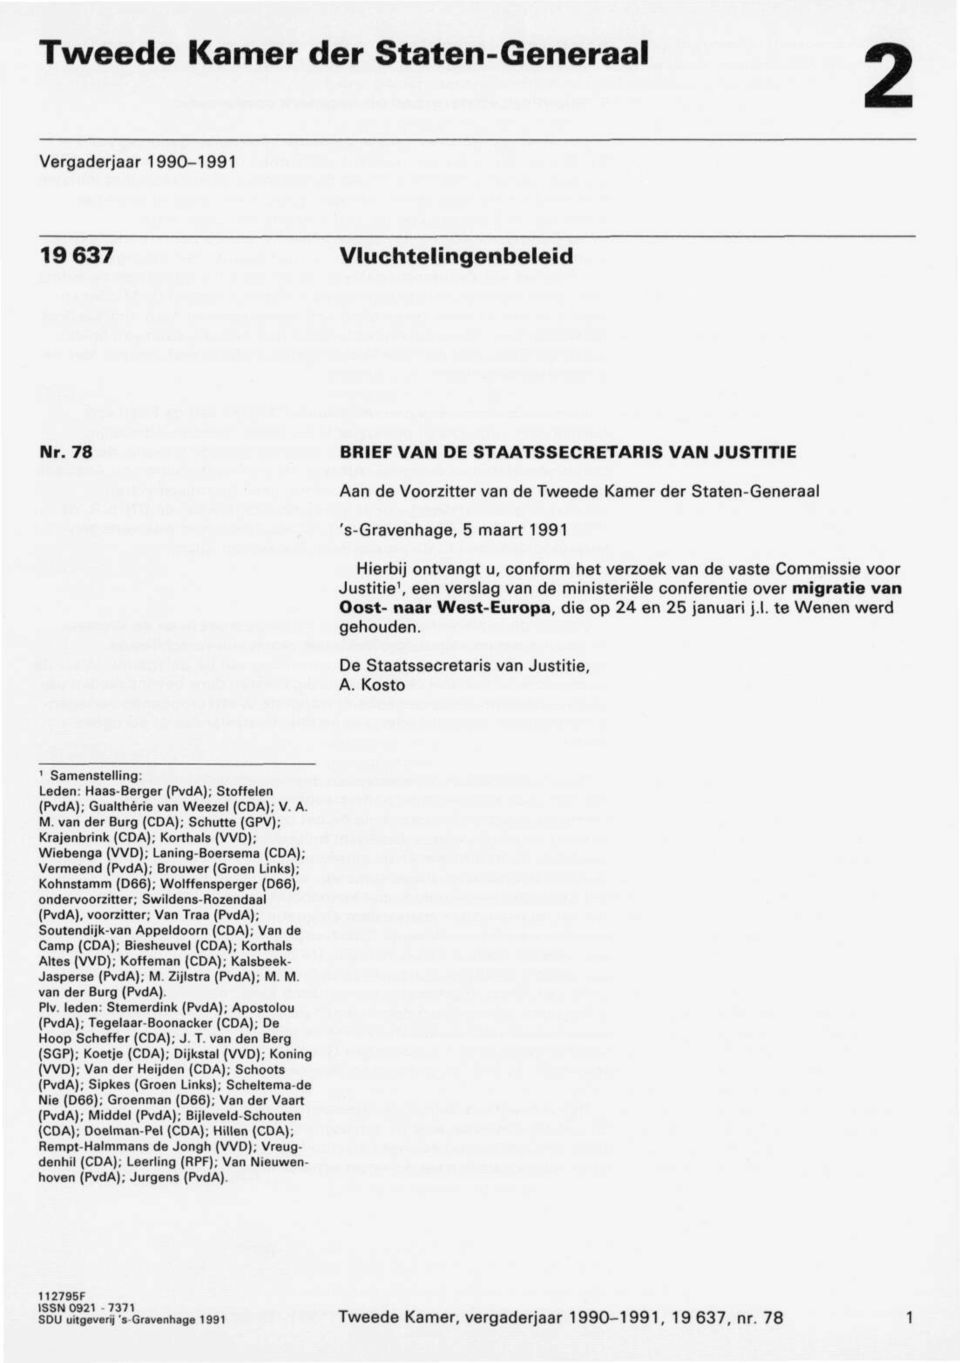 Justitie', een verslag van de ministeriële conferentie over migratie van Oost naar West Europa, die op 24 en 25 januari j.l. te Wenen werd gehouden. De Staatssecretaris van Justitie, A.